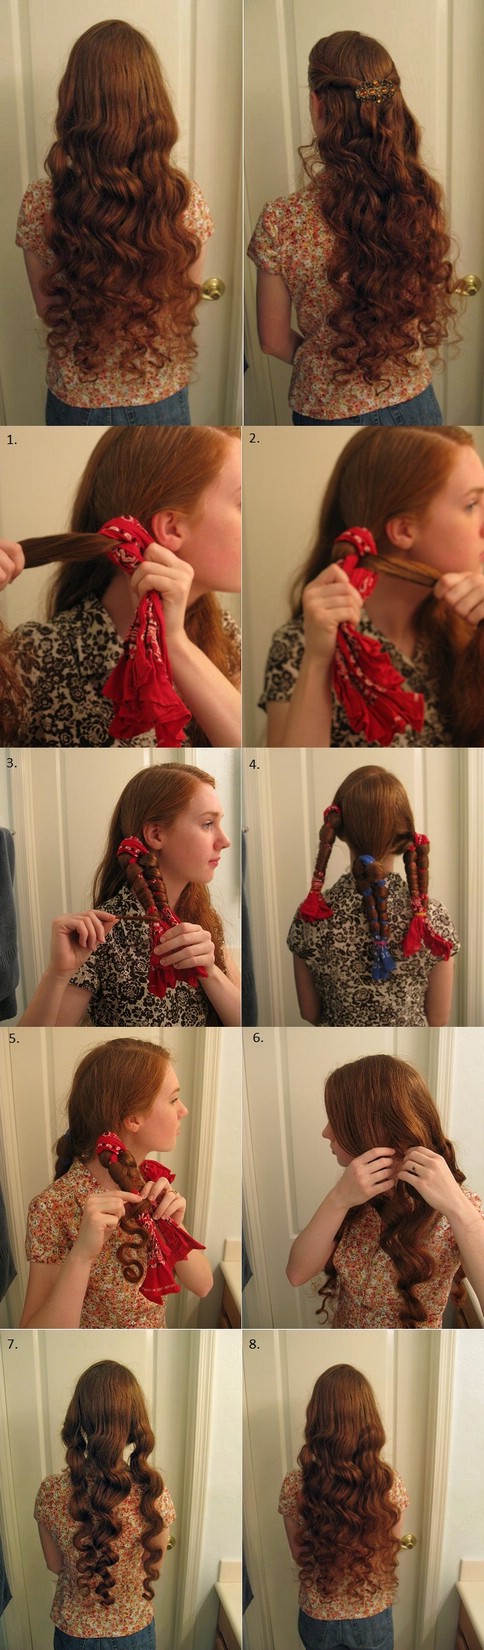 Как завить волосы без плойки и бигуди с помощью футболки